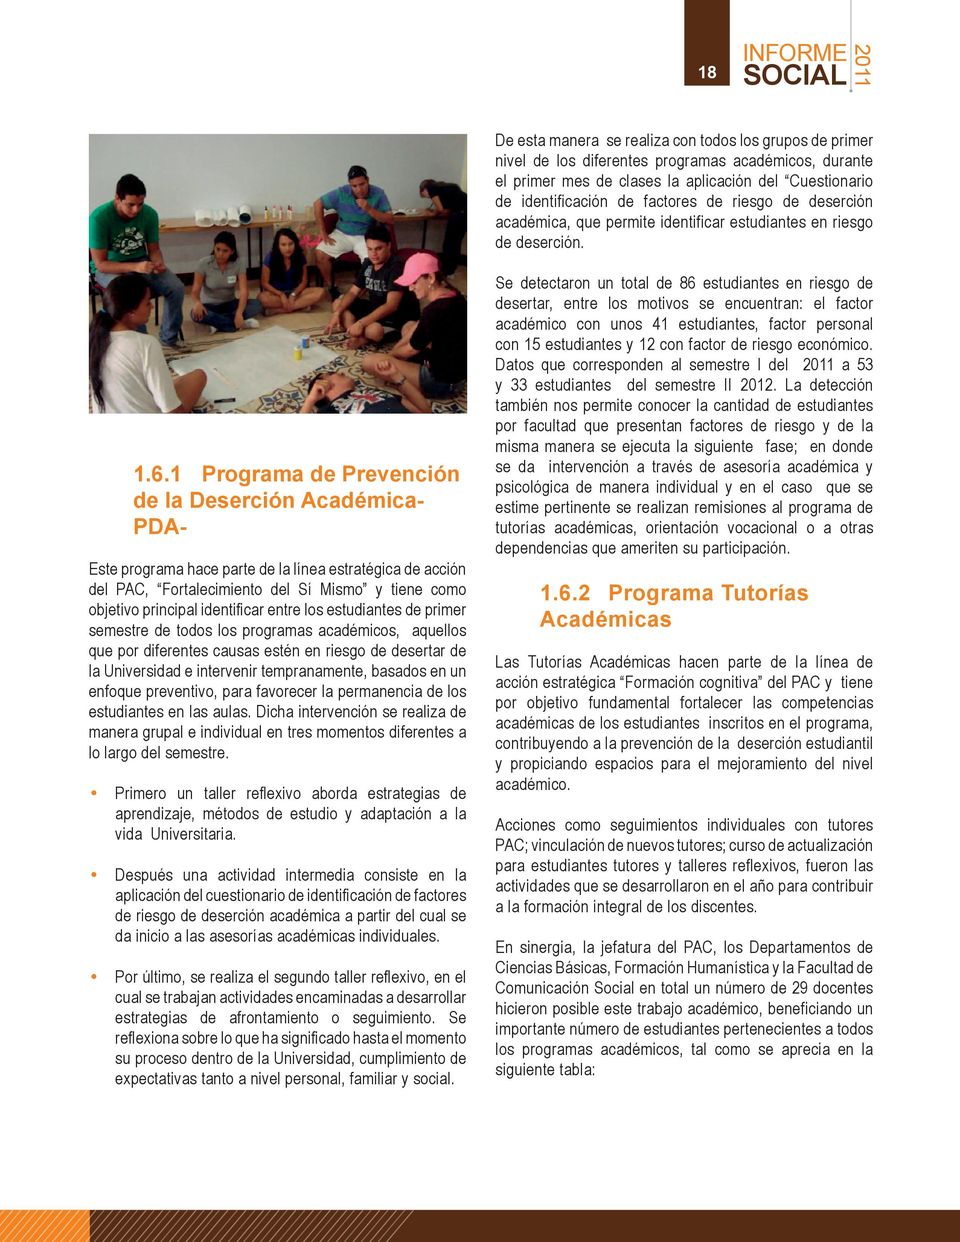 1 Programa de Prevención de la Deserción Académica- PDA- Este programa hace parte de la línea estratégica de acción del PAC, Fortalecimiento del Sí Mismo y tiene como objetivo principal identificar